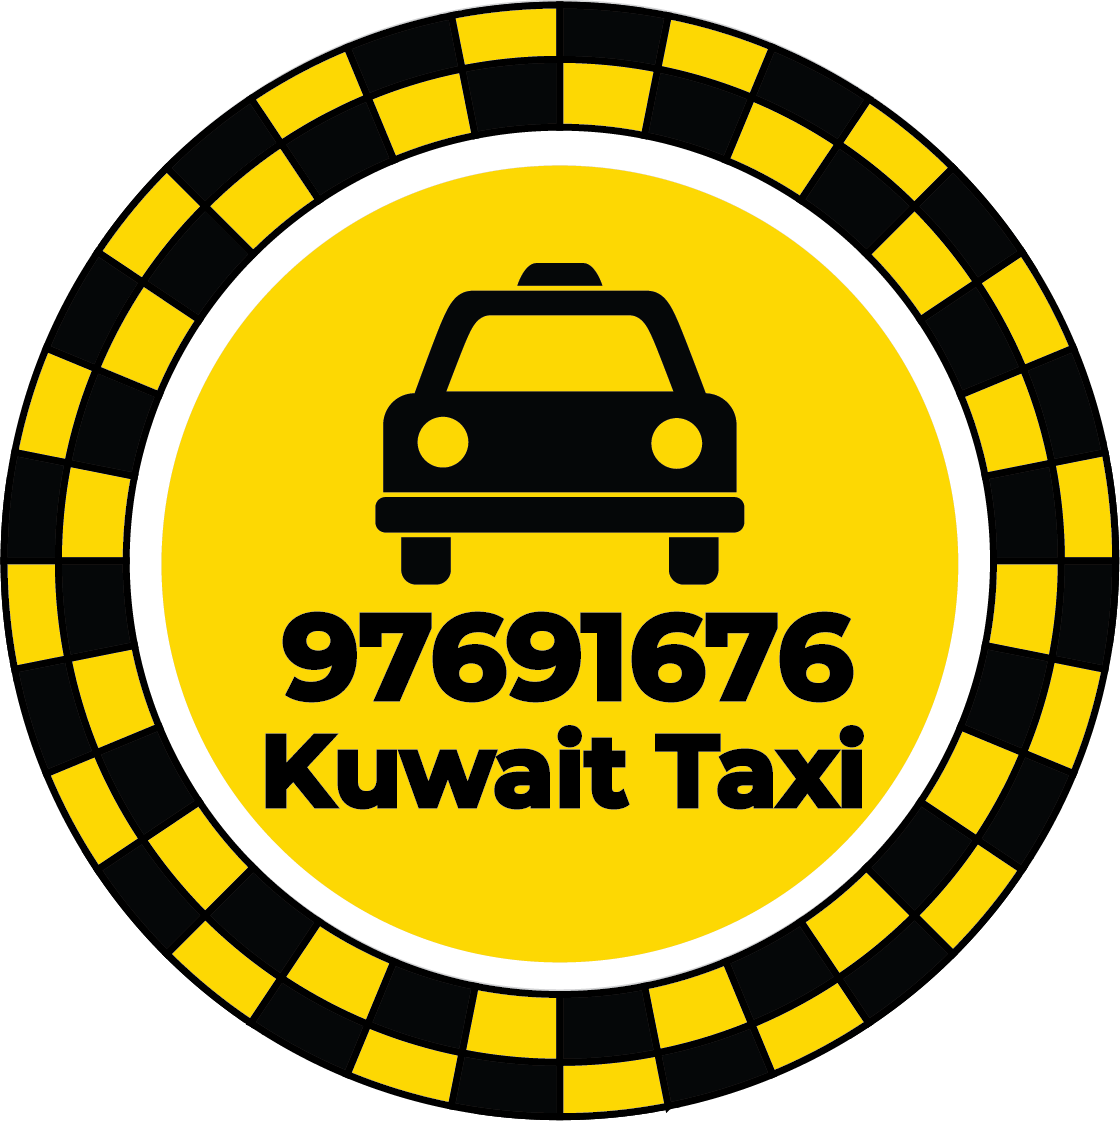 Taxi Ahmadi 97691676 - Taxi Number Ahmadi